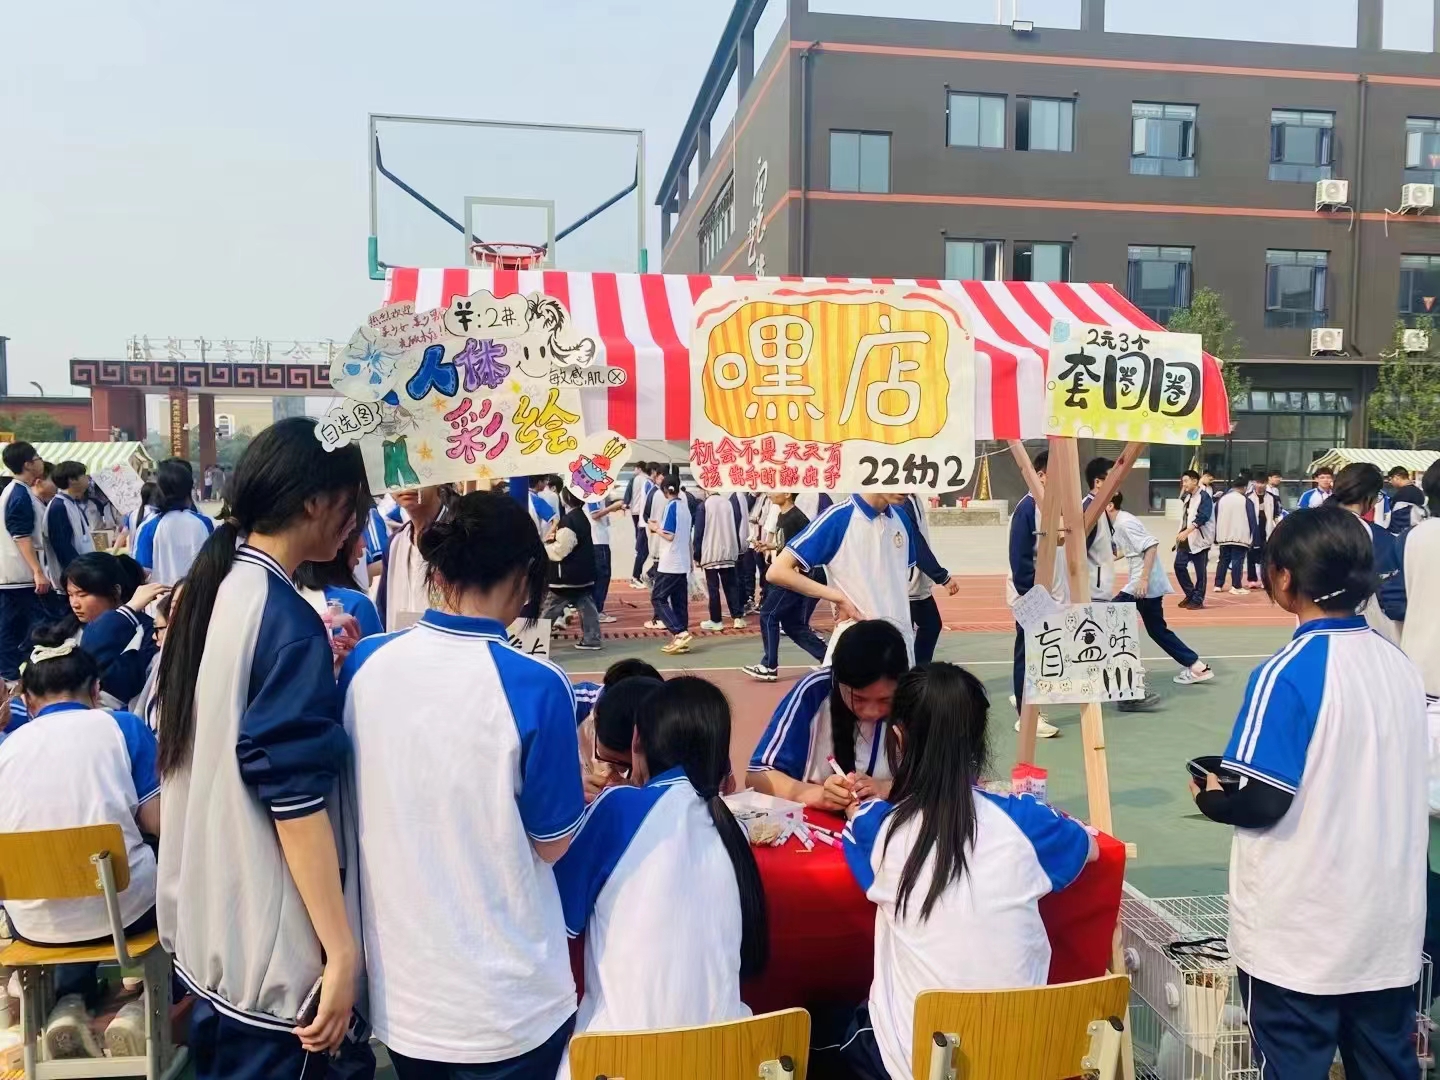 夹江县云吟职业中学校举行“义路同行 与爱相伴”爱心义卖暨新青年跳蚤市场活动